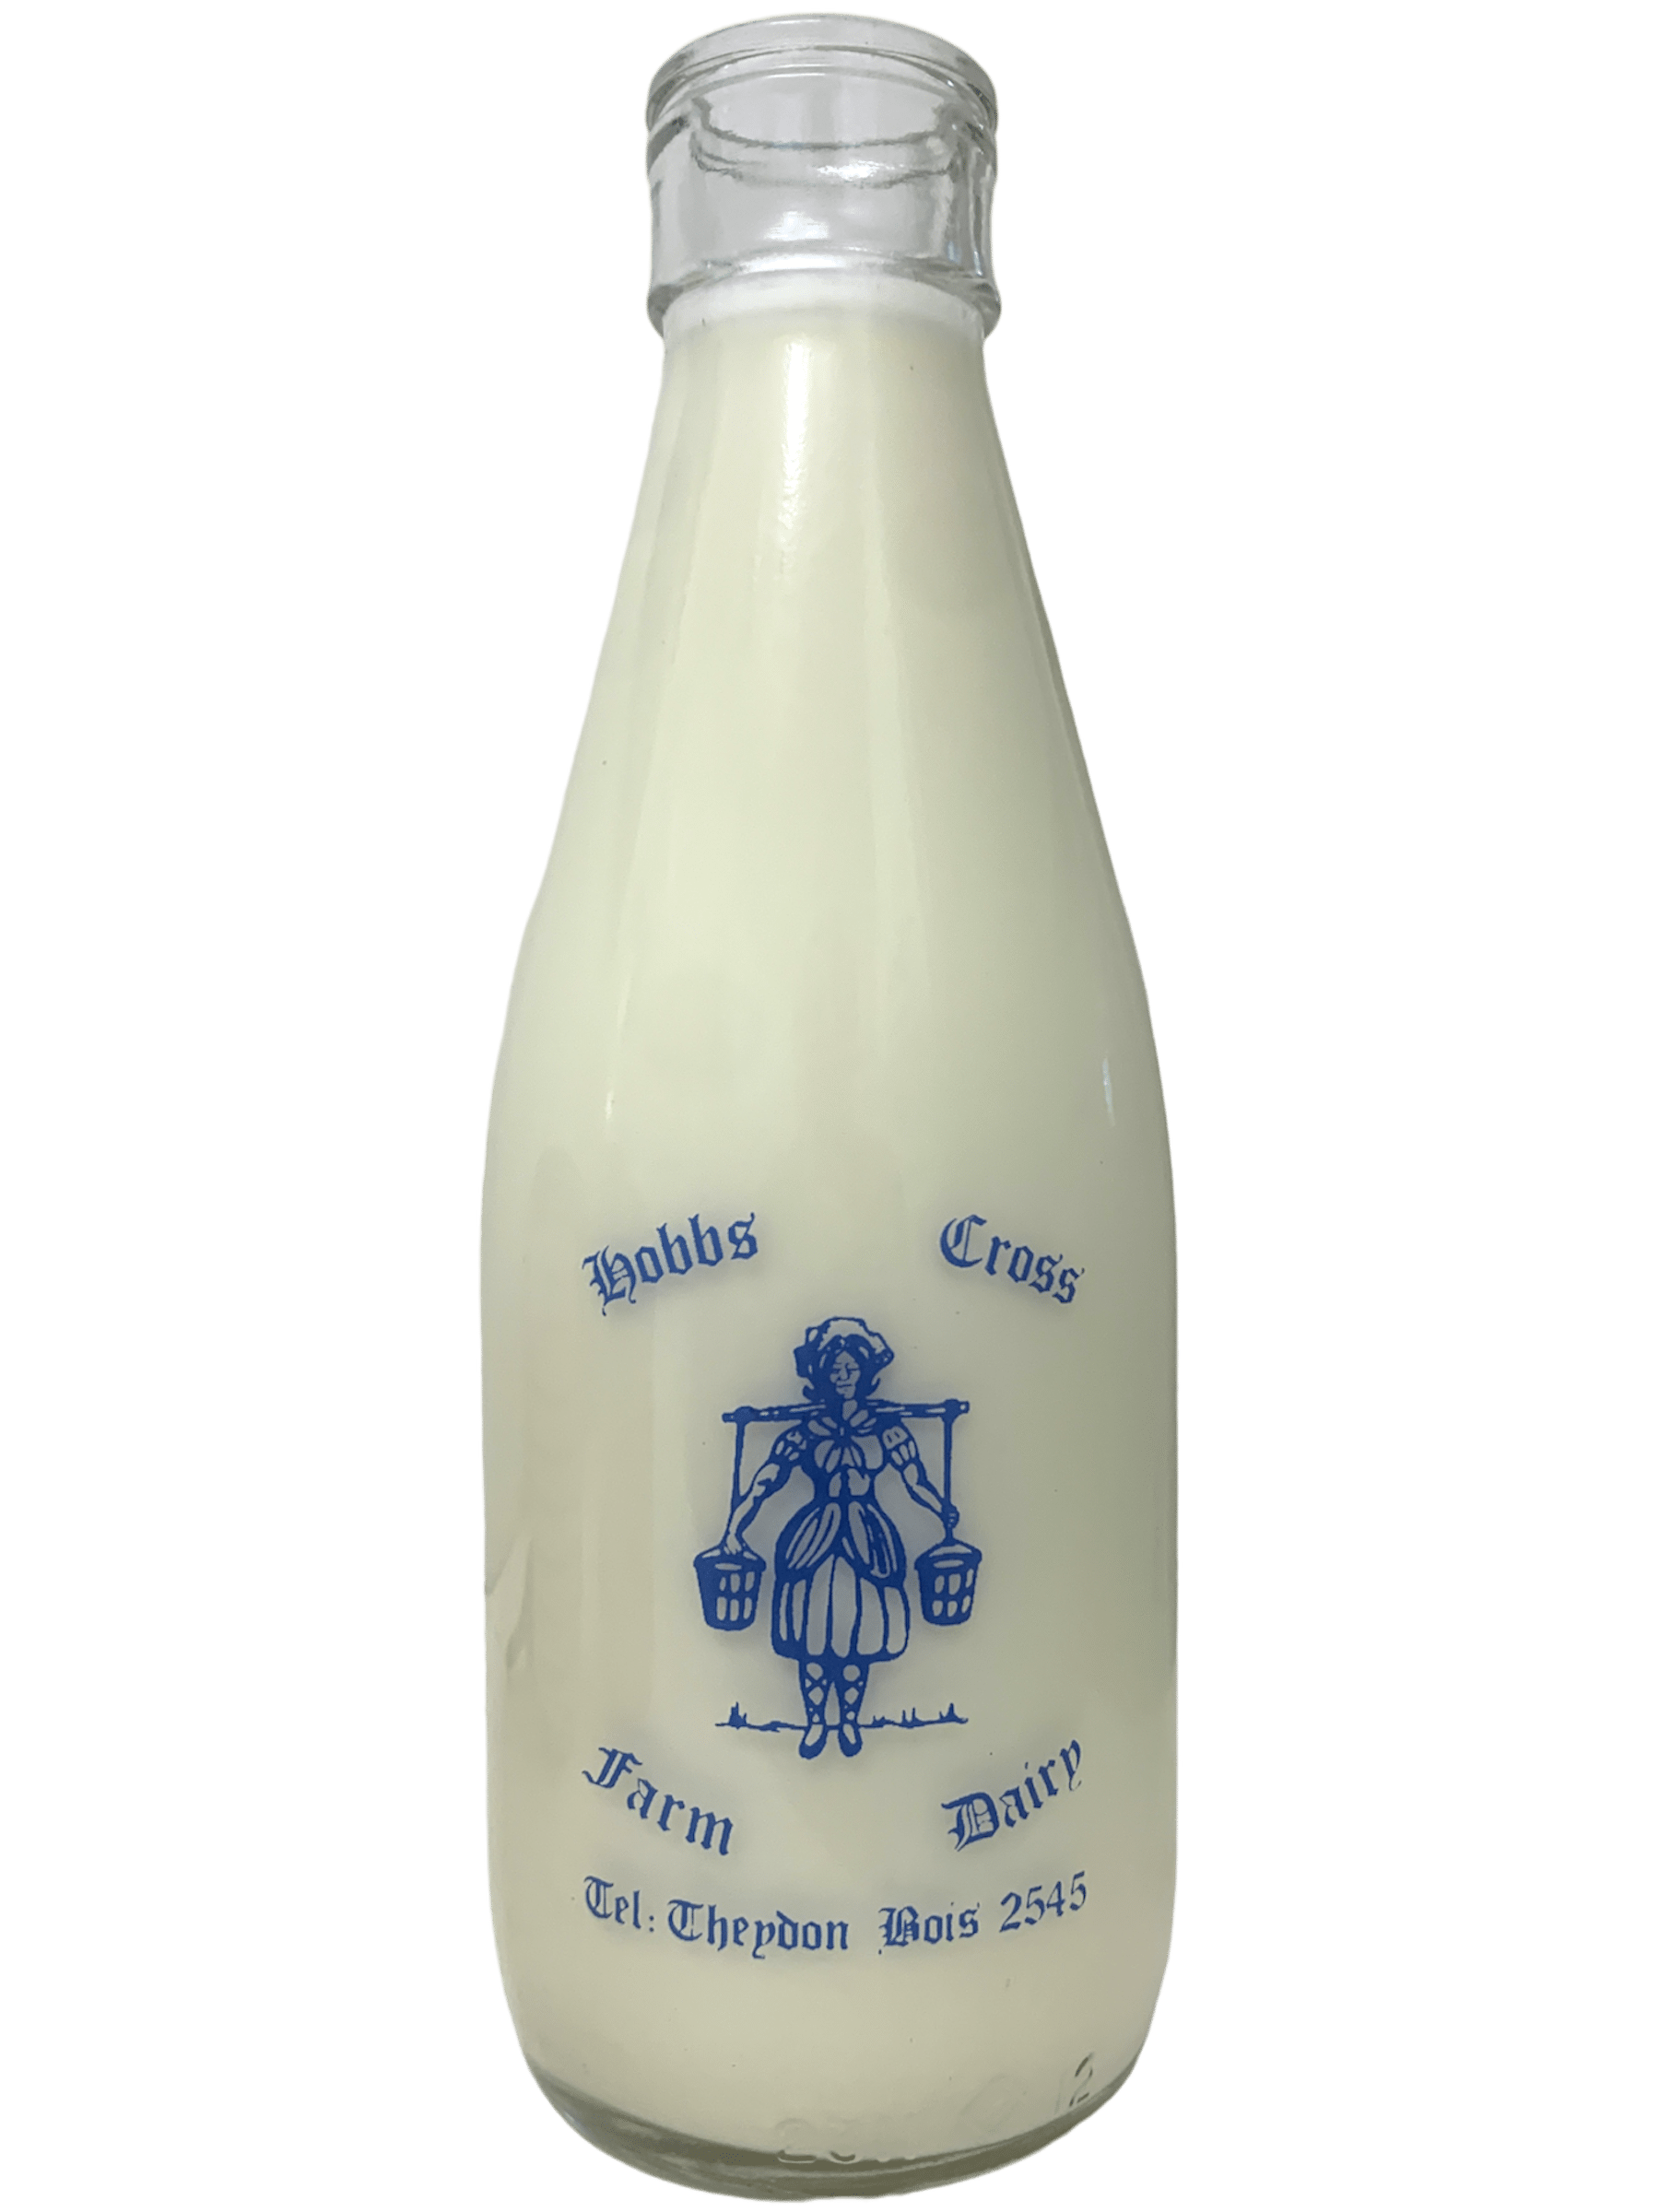 Hobbs Cross Farm Dairy - www.Kelis.info #KelisTheBottleBank